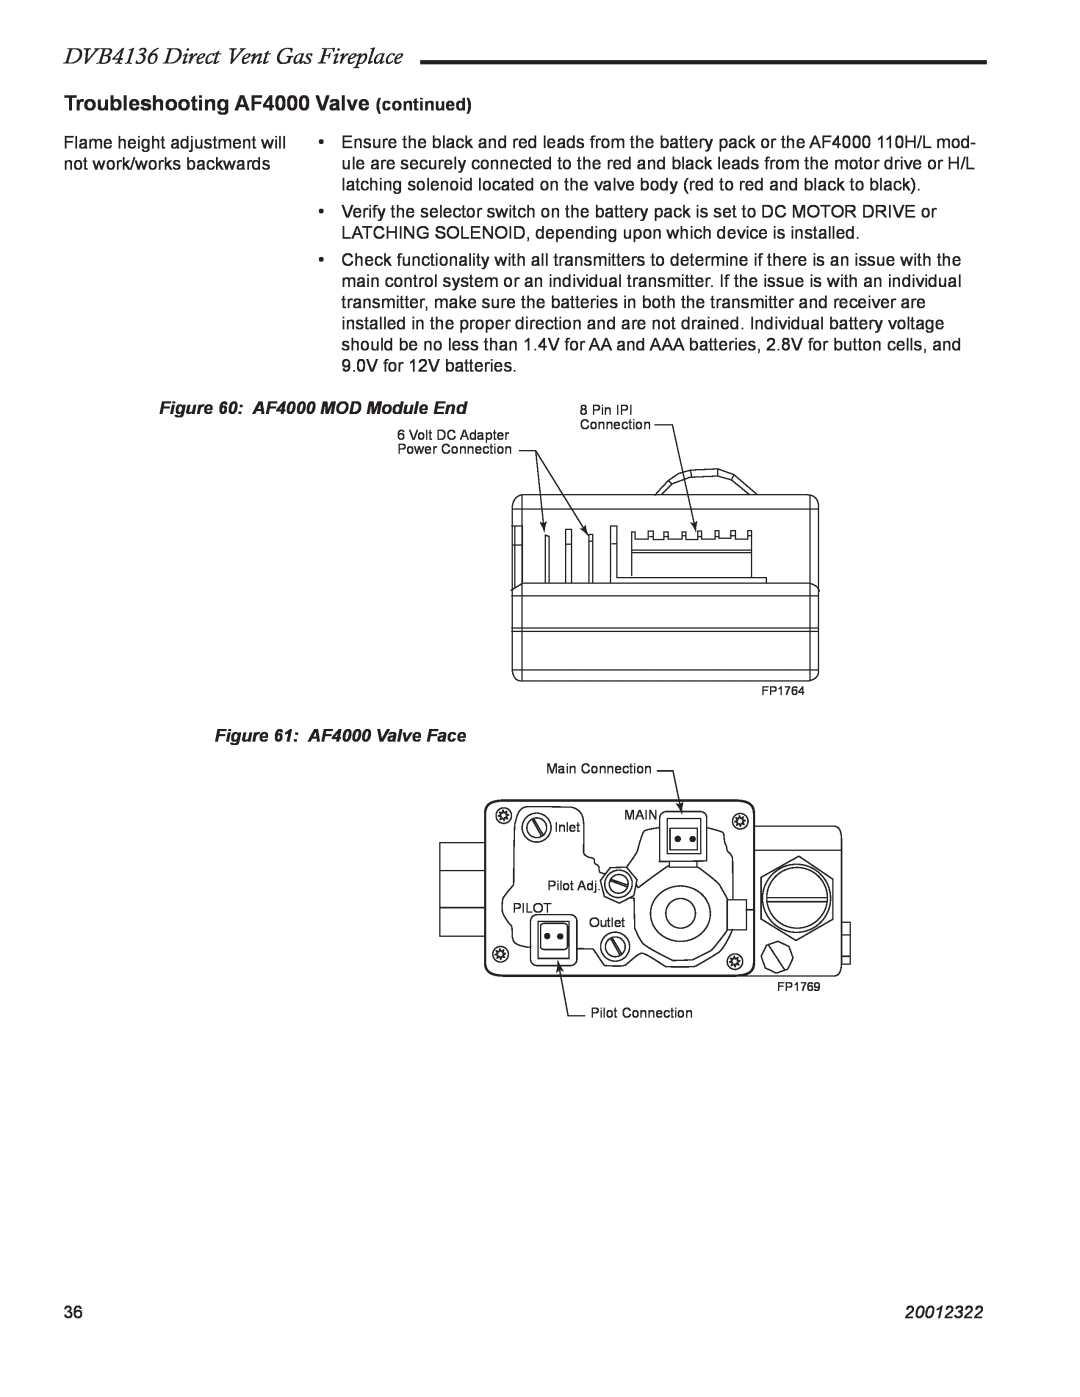 Majestic Appliances manual DVB4136 Direct Vent Gas Fireplace, AF4000 MOD Module End, AF4000 Valve Face, 20012322 